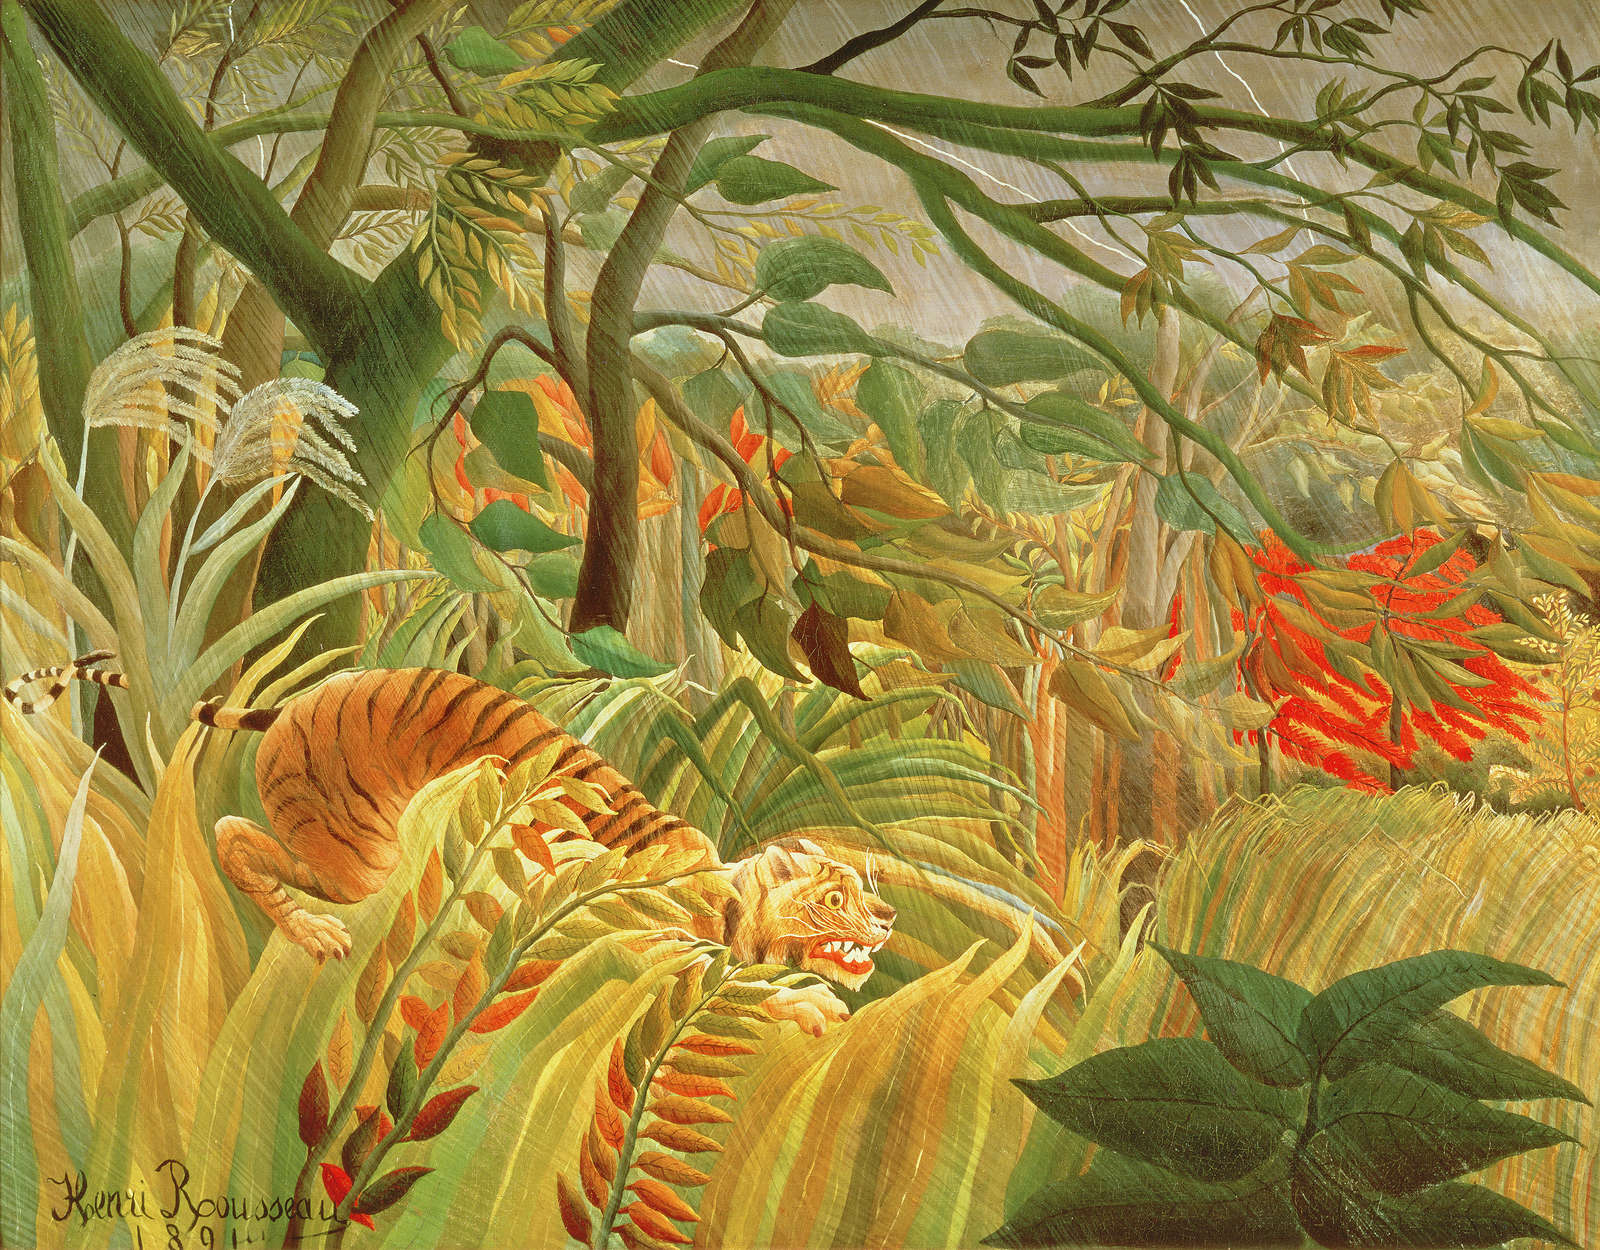             Fotomurali "Tigre in una tempesta tropicale" di Henri Rousseau
        